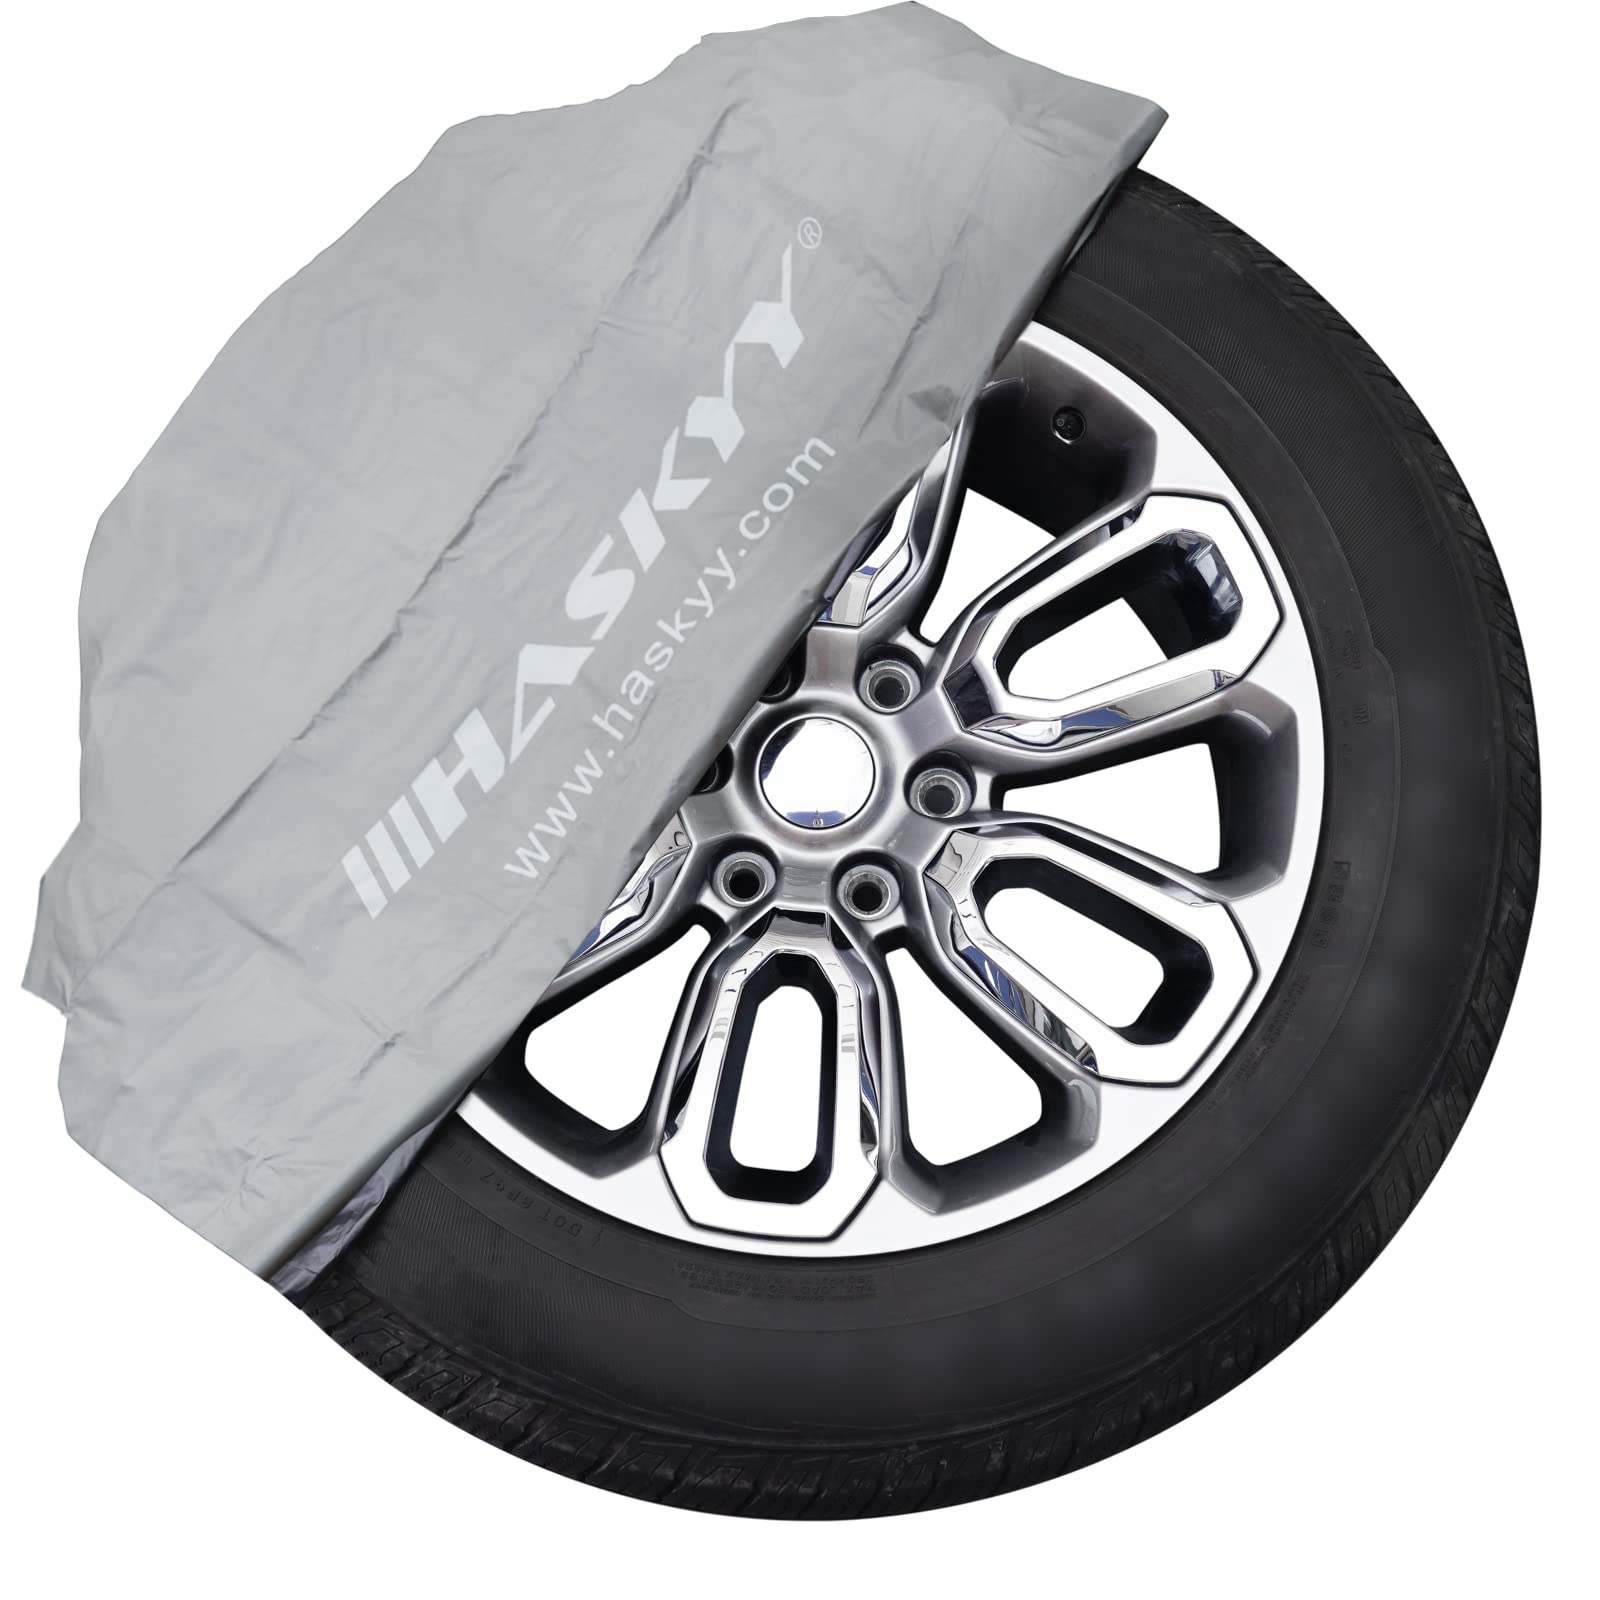 HASKYY Set Reifentüten Reifentaschen 110x110cm XXL 4 tlg. bis 22" Premium Reifen Schutzhülle Tüten Satz für Reifen Aufbewahrung, Transport und Lagerung - GRAU von HASKYY